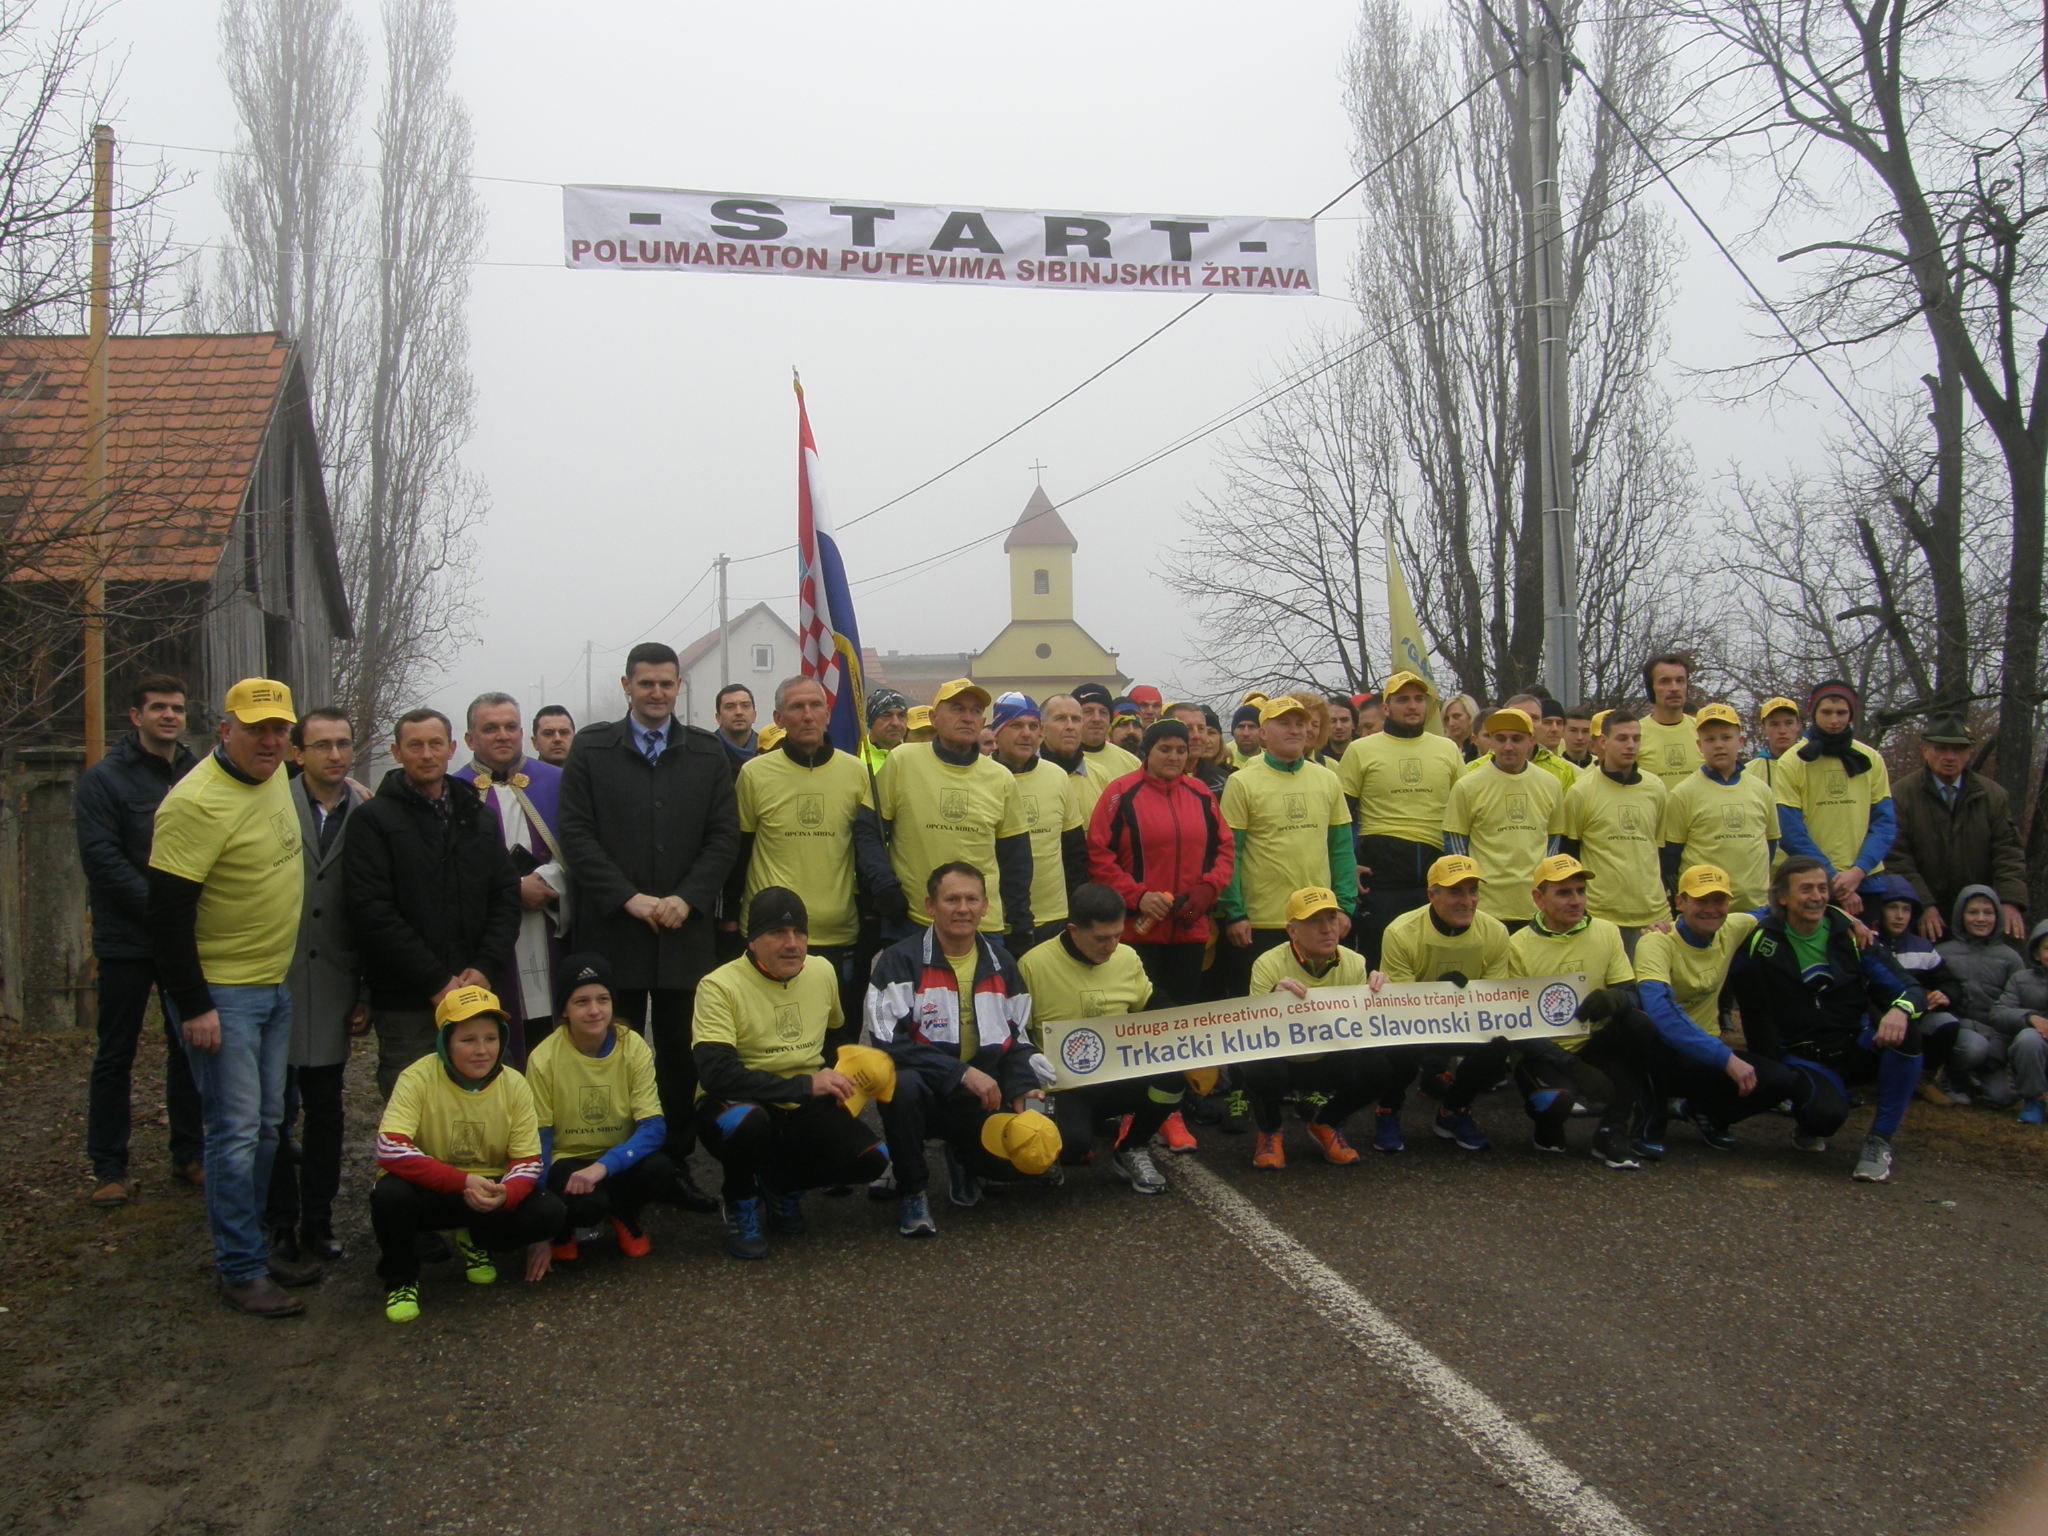 DAN OPĆINE SIBINJ: Gotovo 200 sudionika trčalo tradicionalni polumaraton 'Putevima Sibinjskih žrtava'